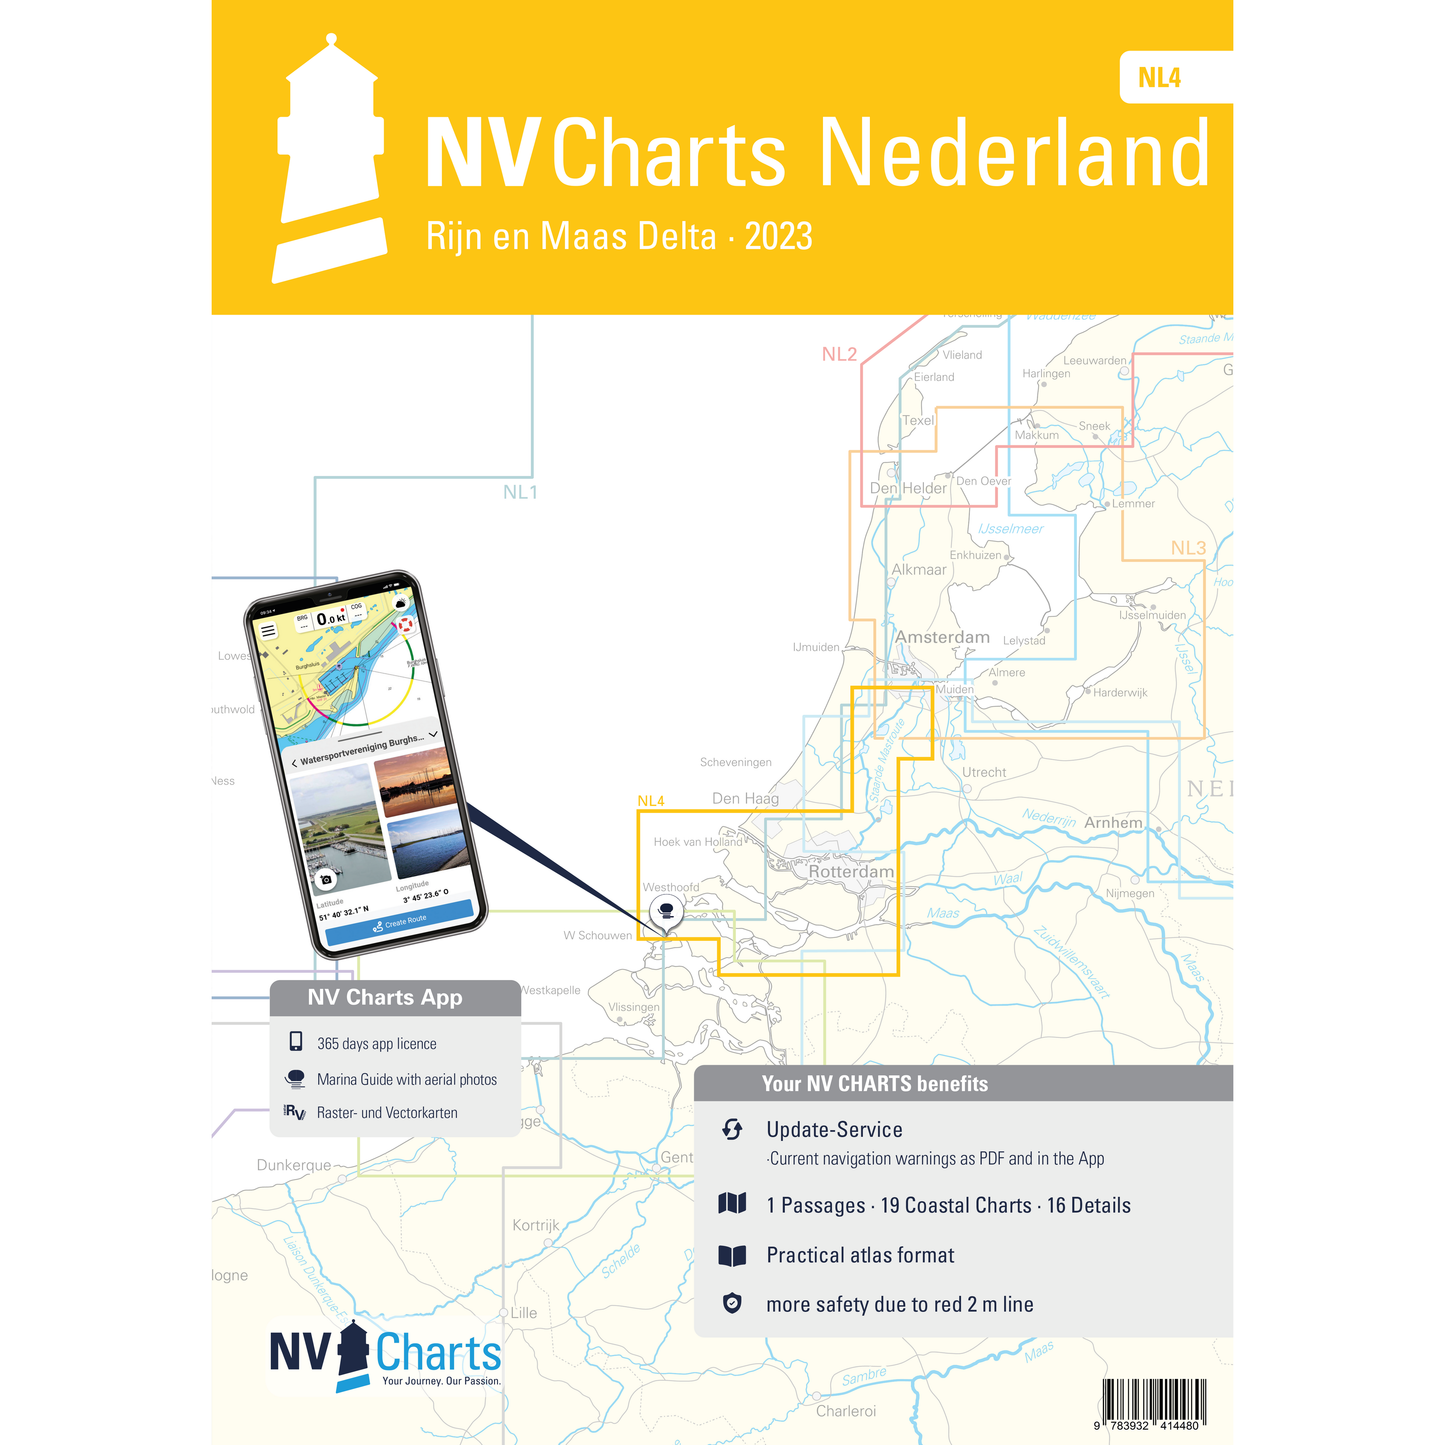 Carte NV Charts Pays-Bas NL4 - RIJN & MAAS DELTA